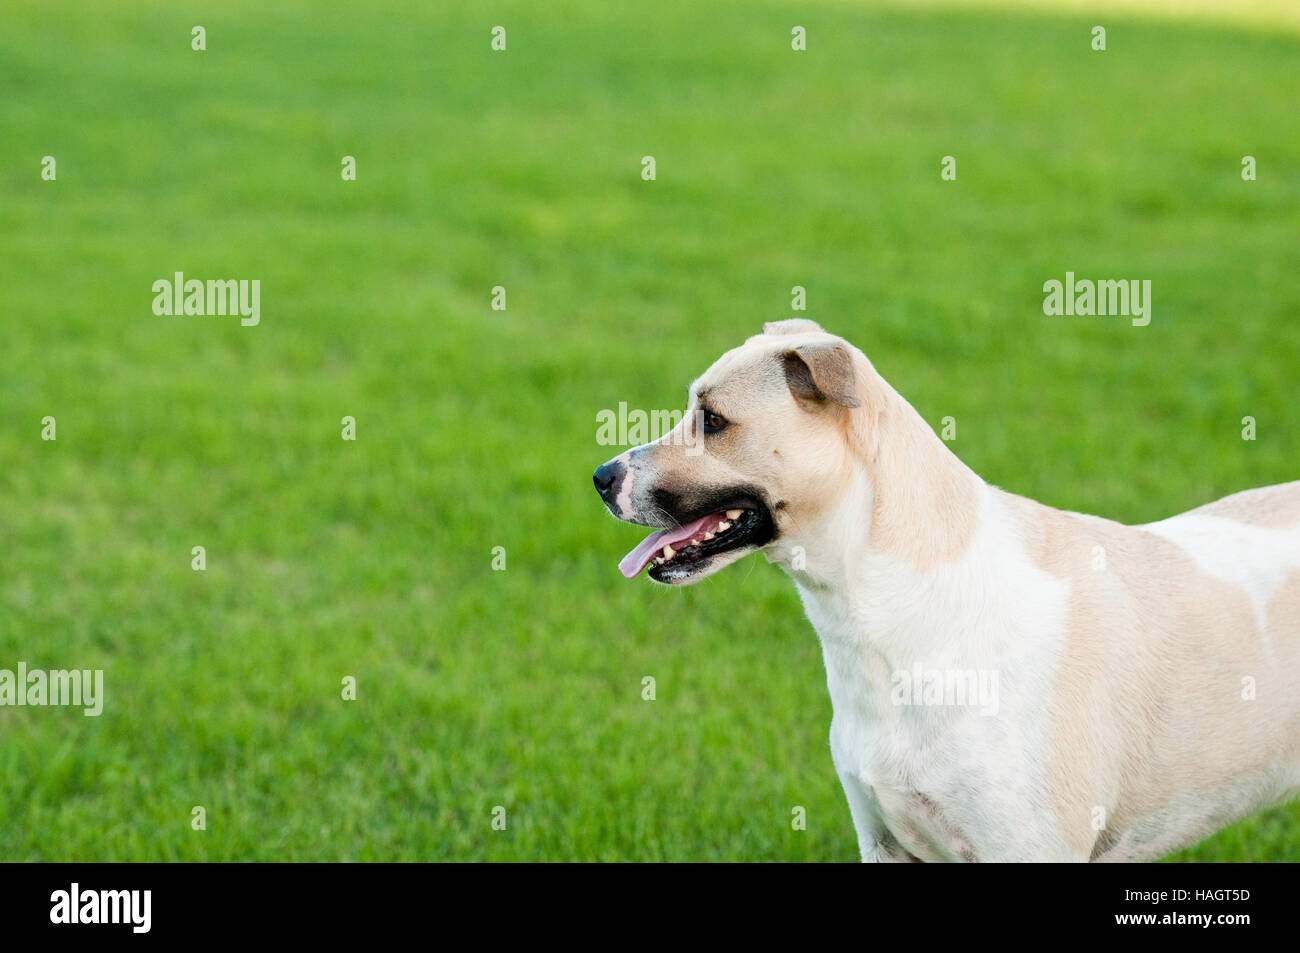 Große weiße und Tan Hund im Freien mit grünen Rasen Hintergrund. Stockfoto